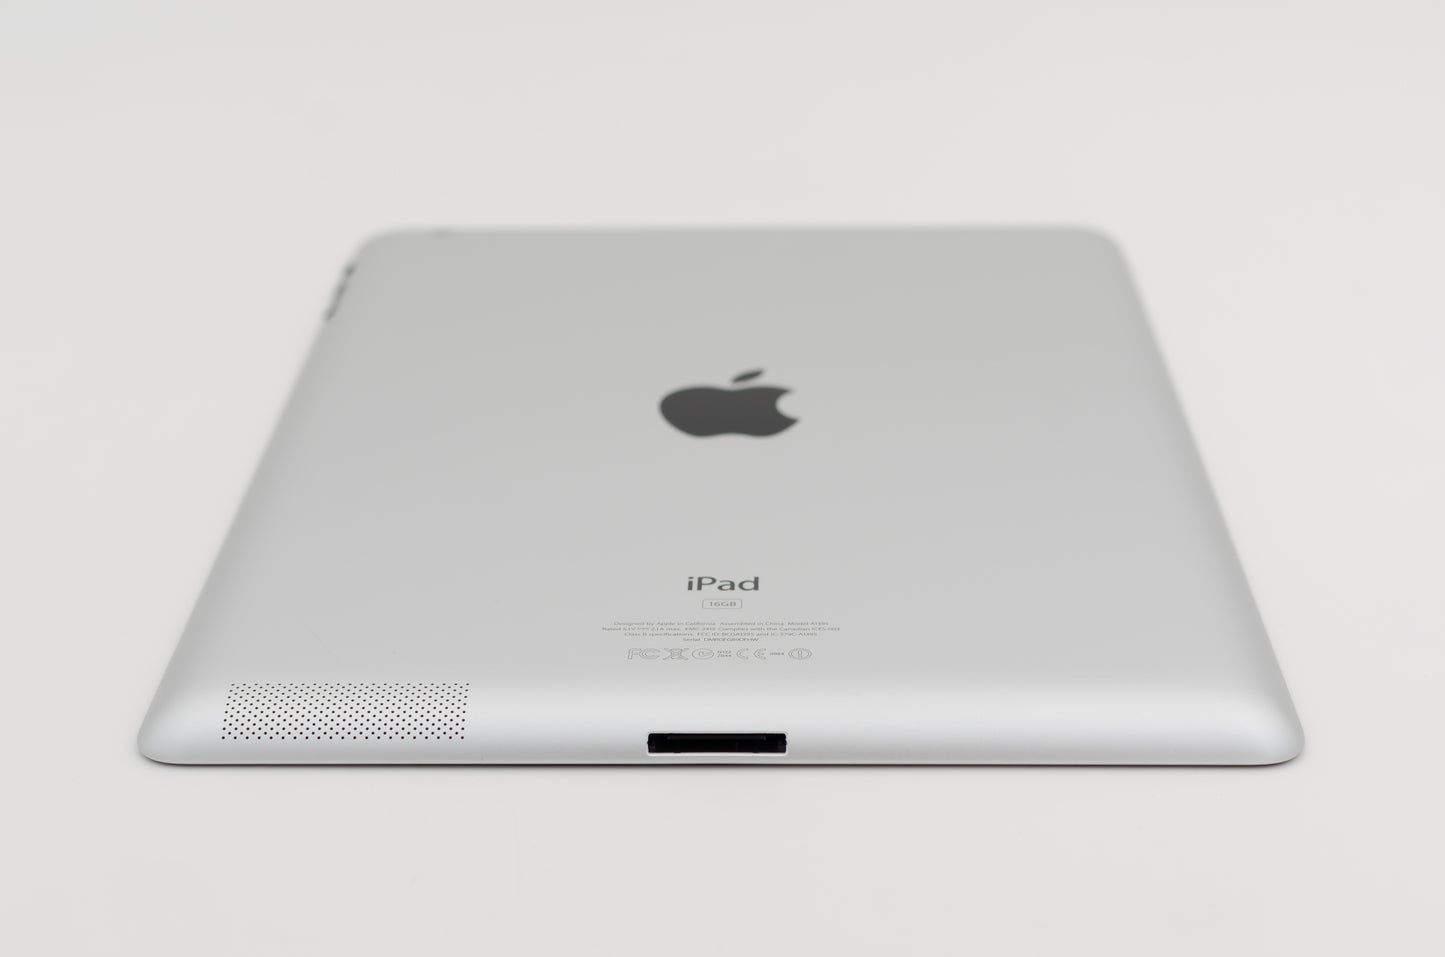 apple-2012-9.7-inch-ipad-2-a1397-silver/black-4